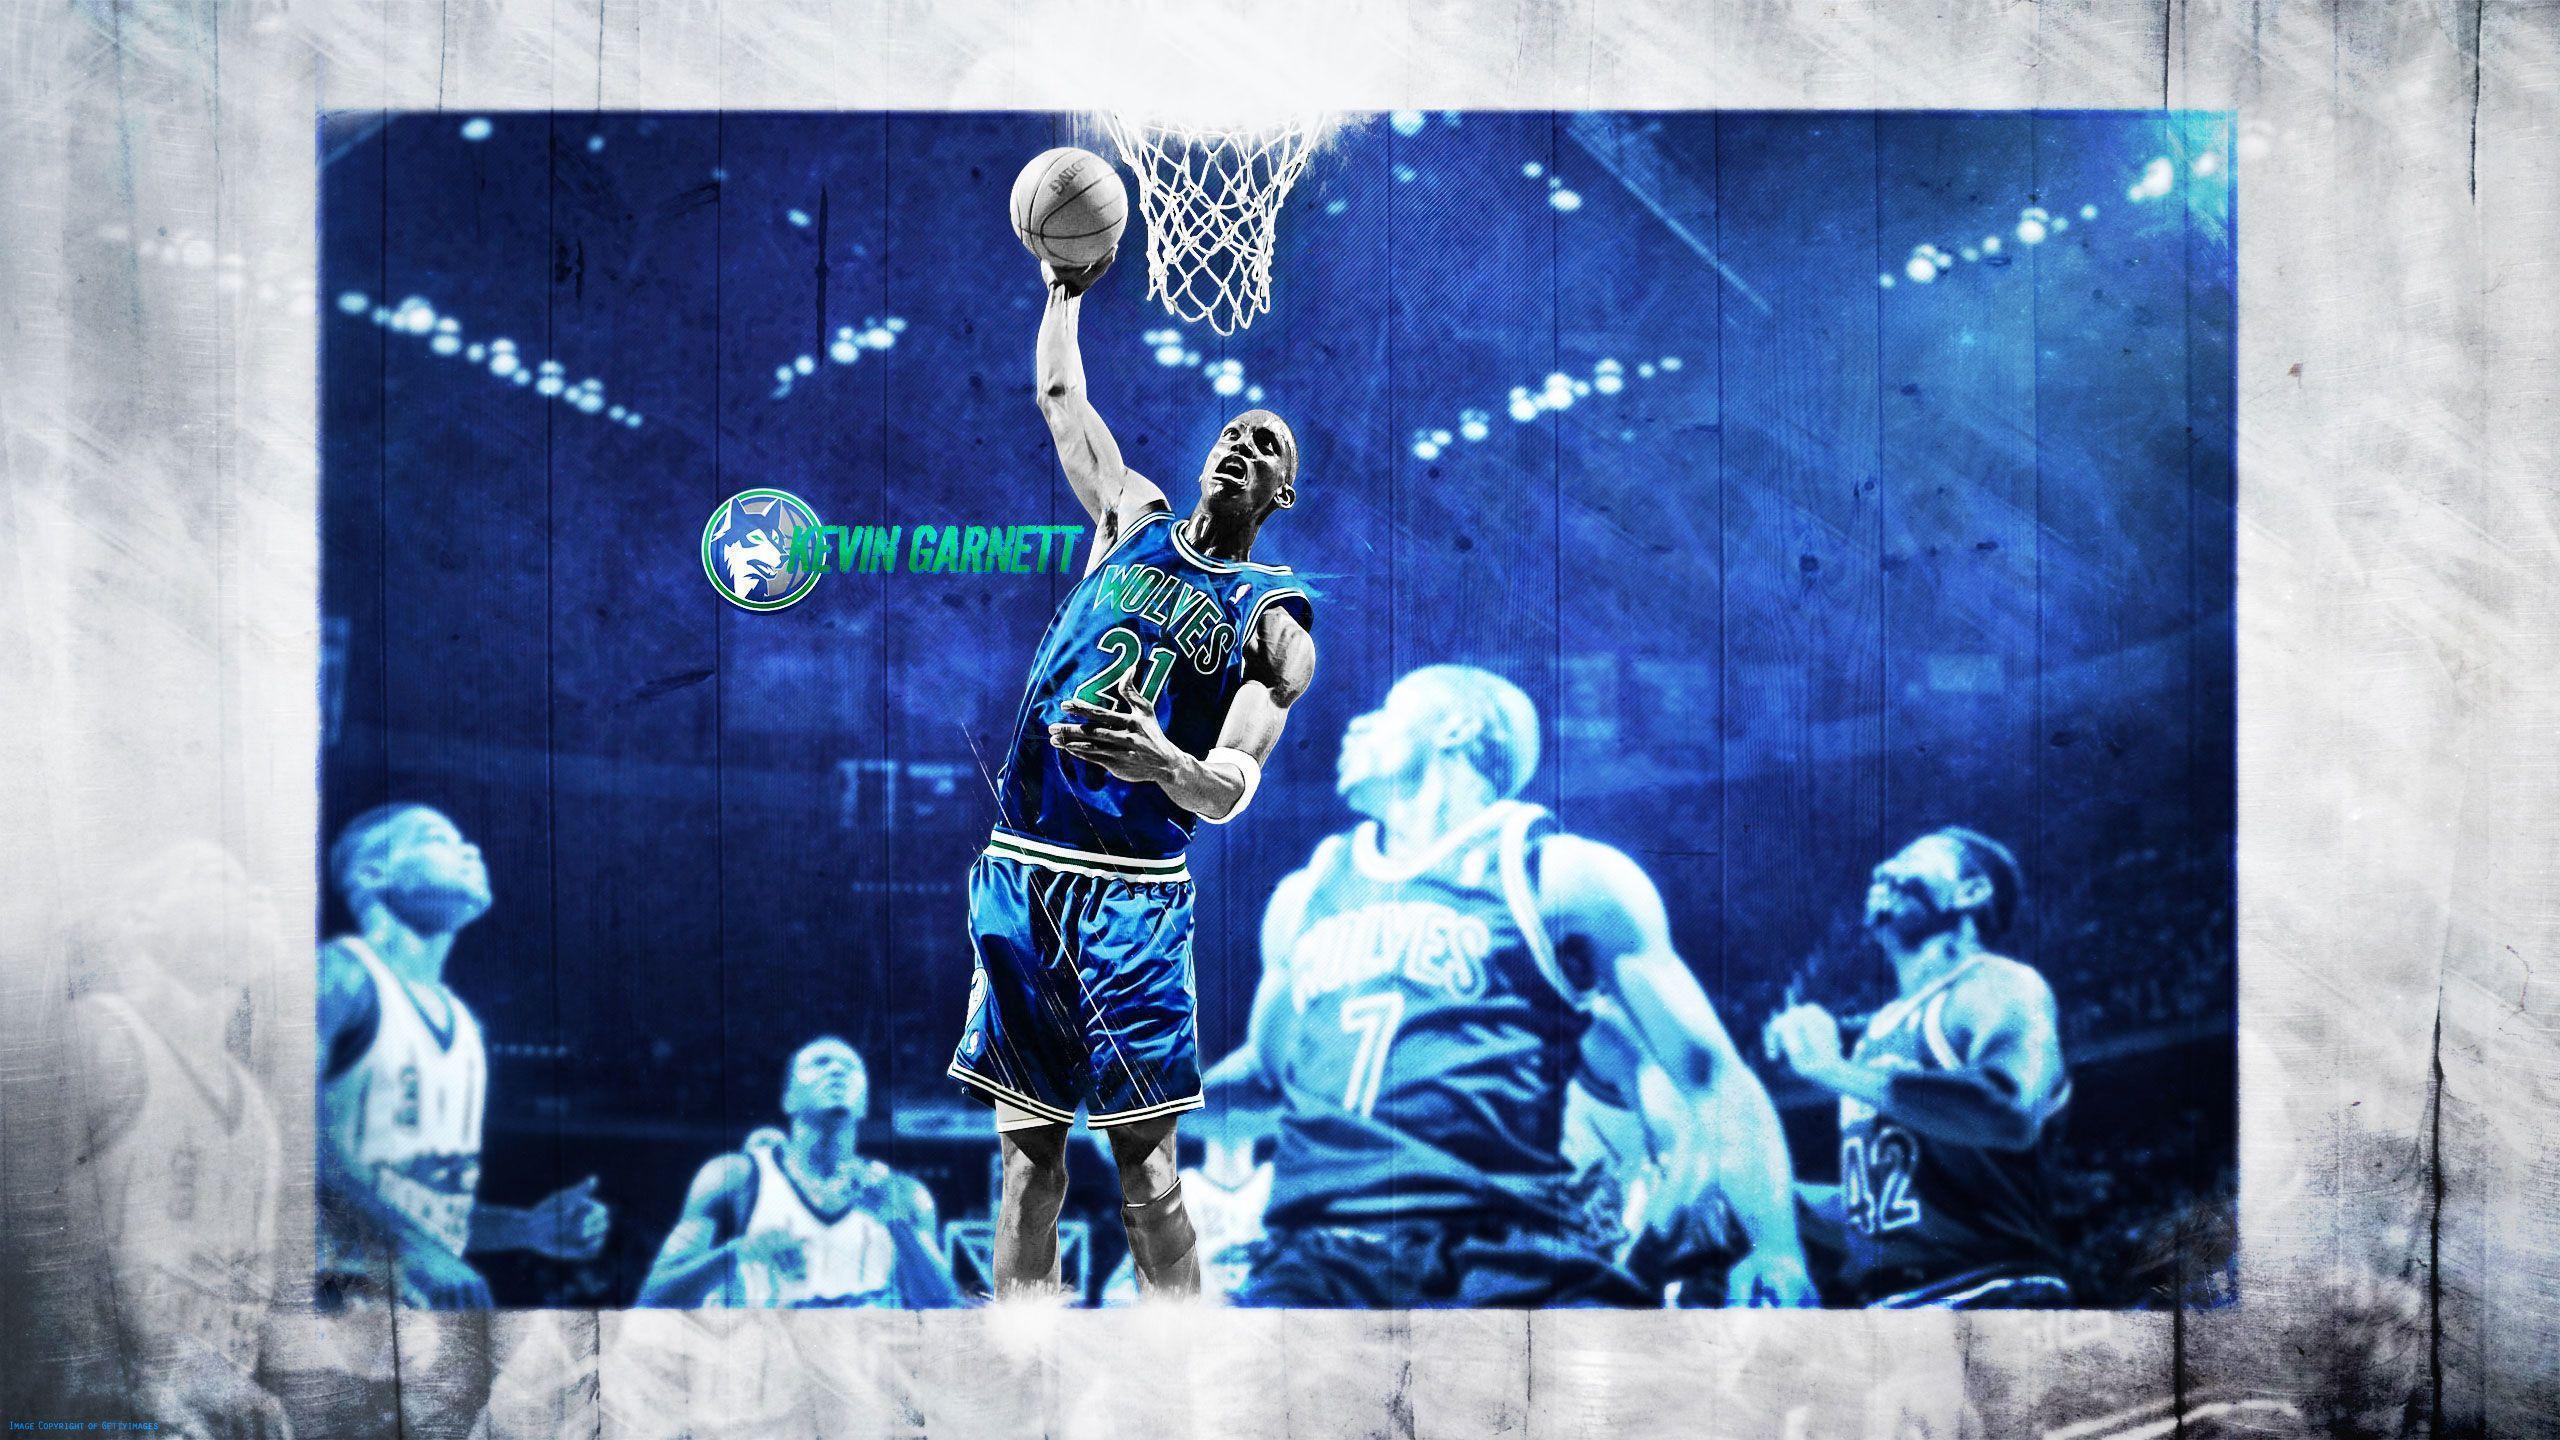 Kevin Garnett Wallpaper. Basketball Wallpaper at